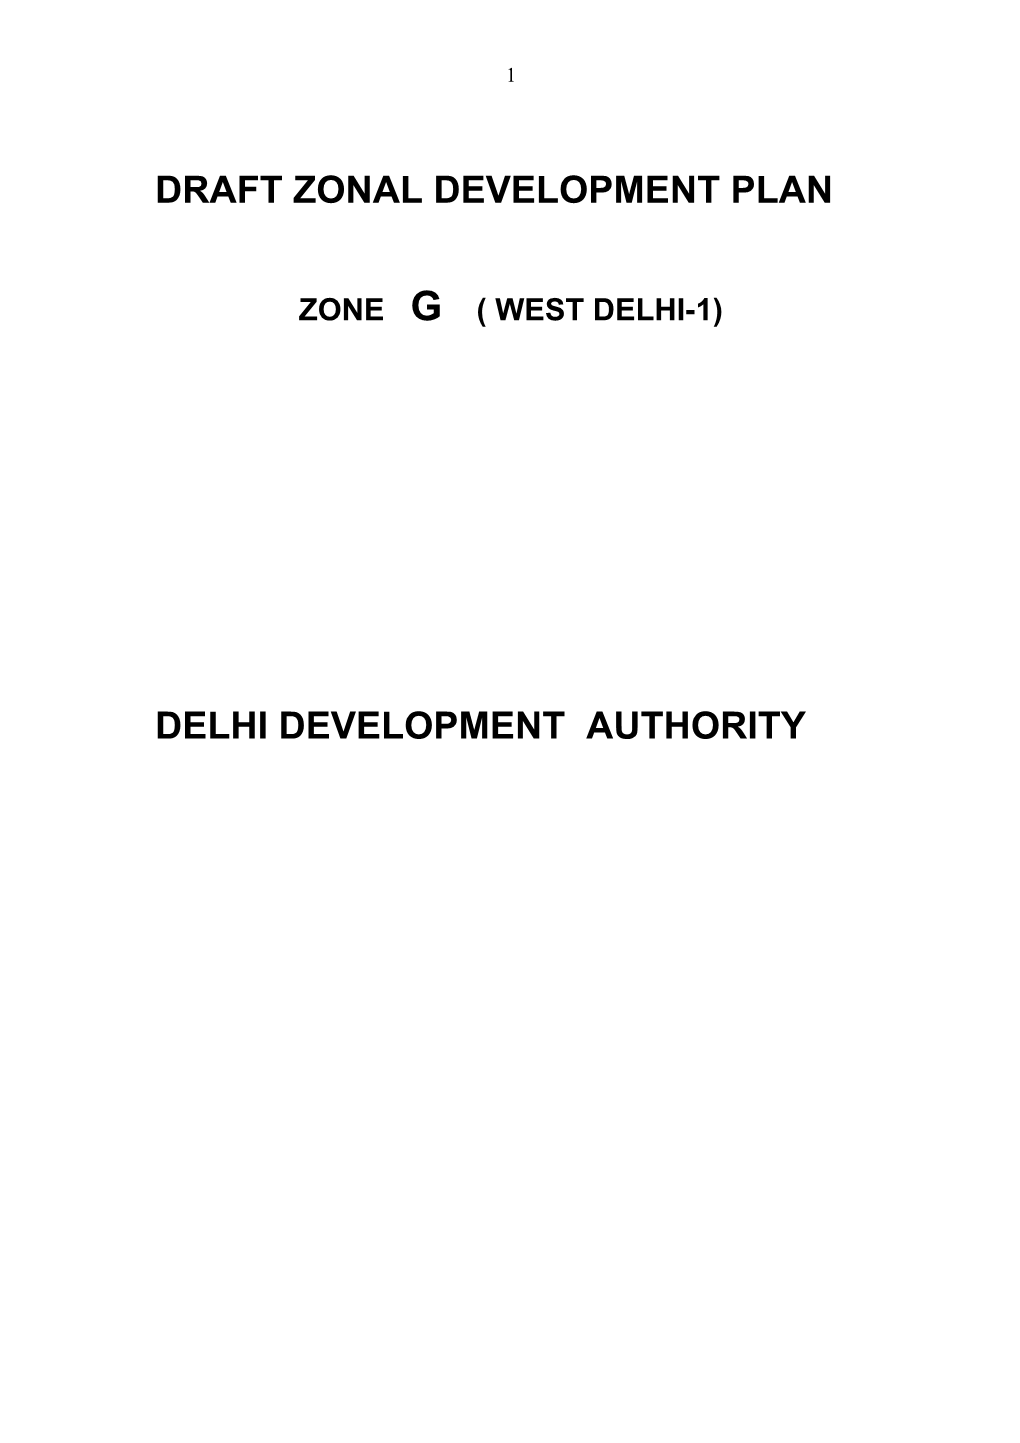 Draft Zonal Development Plan